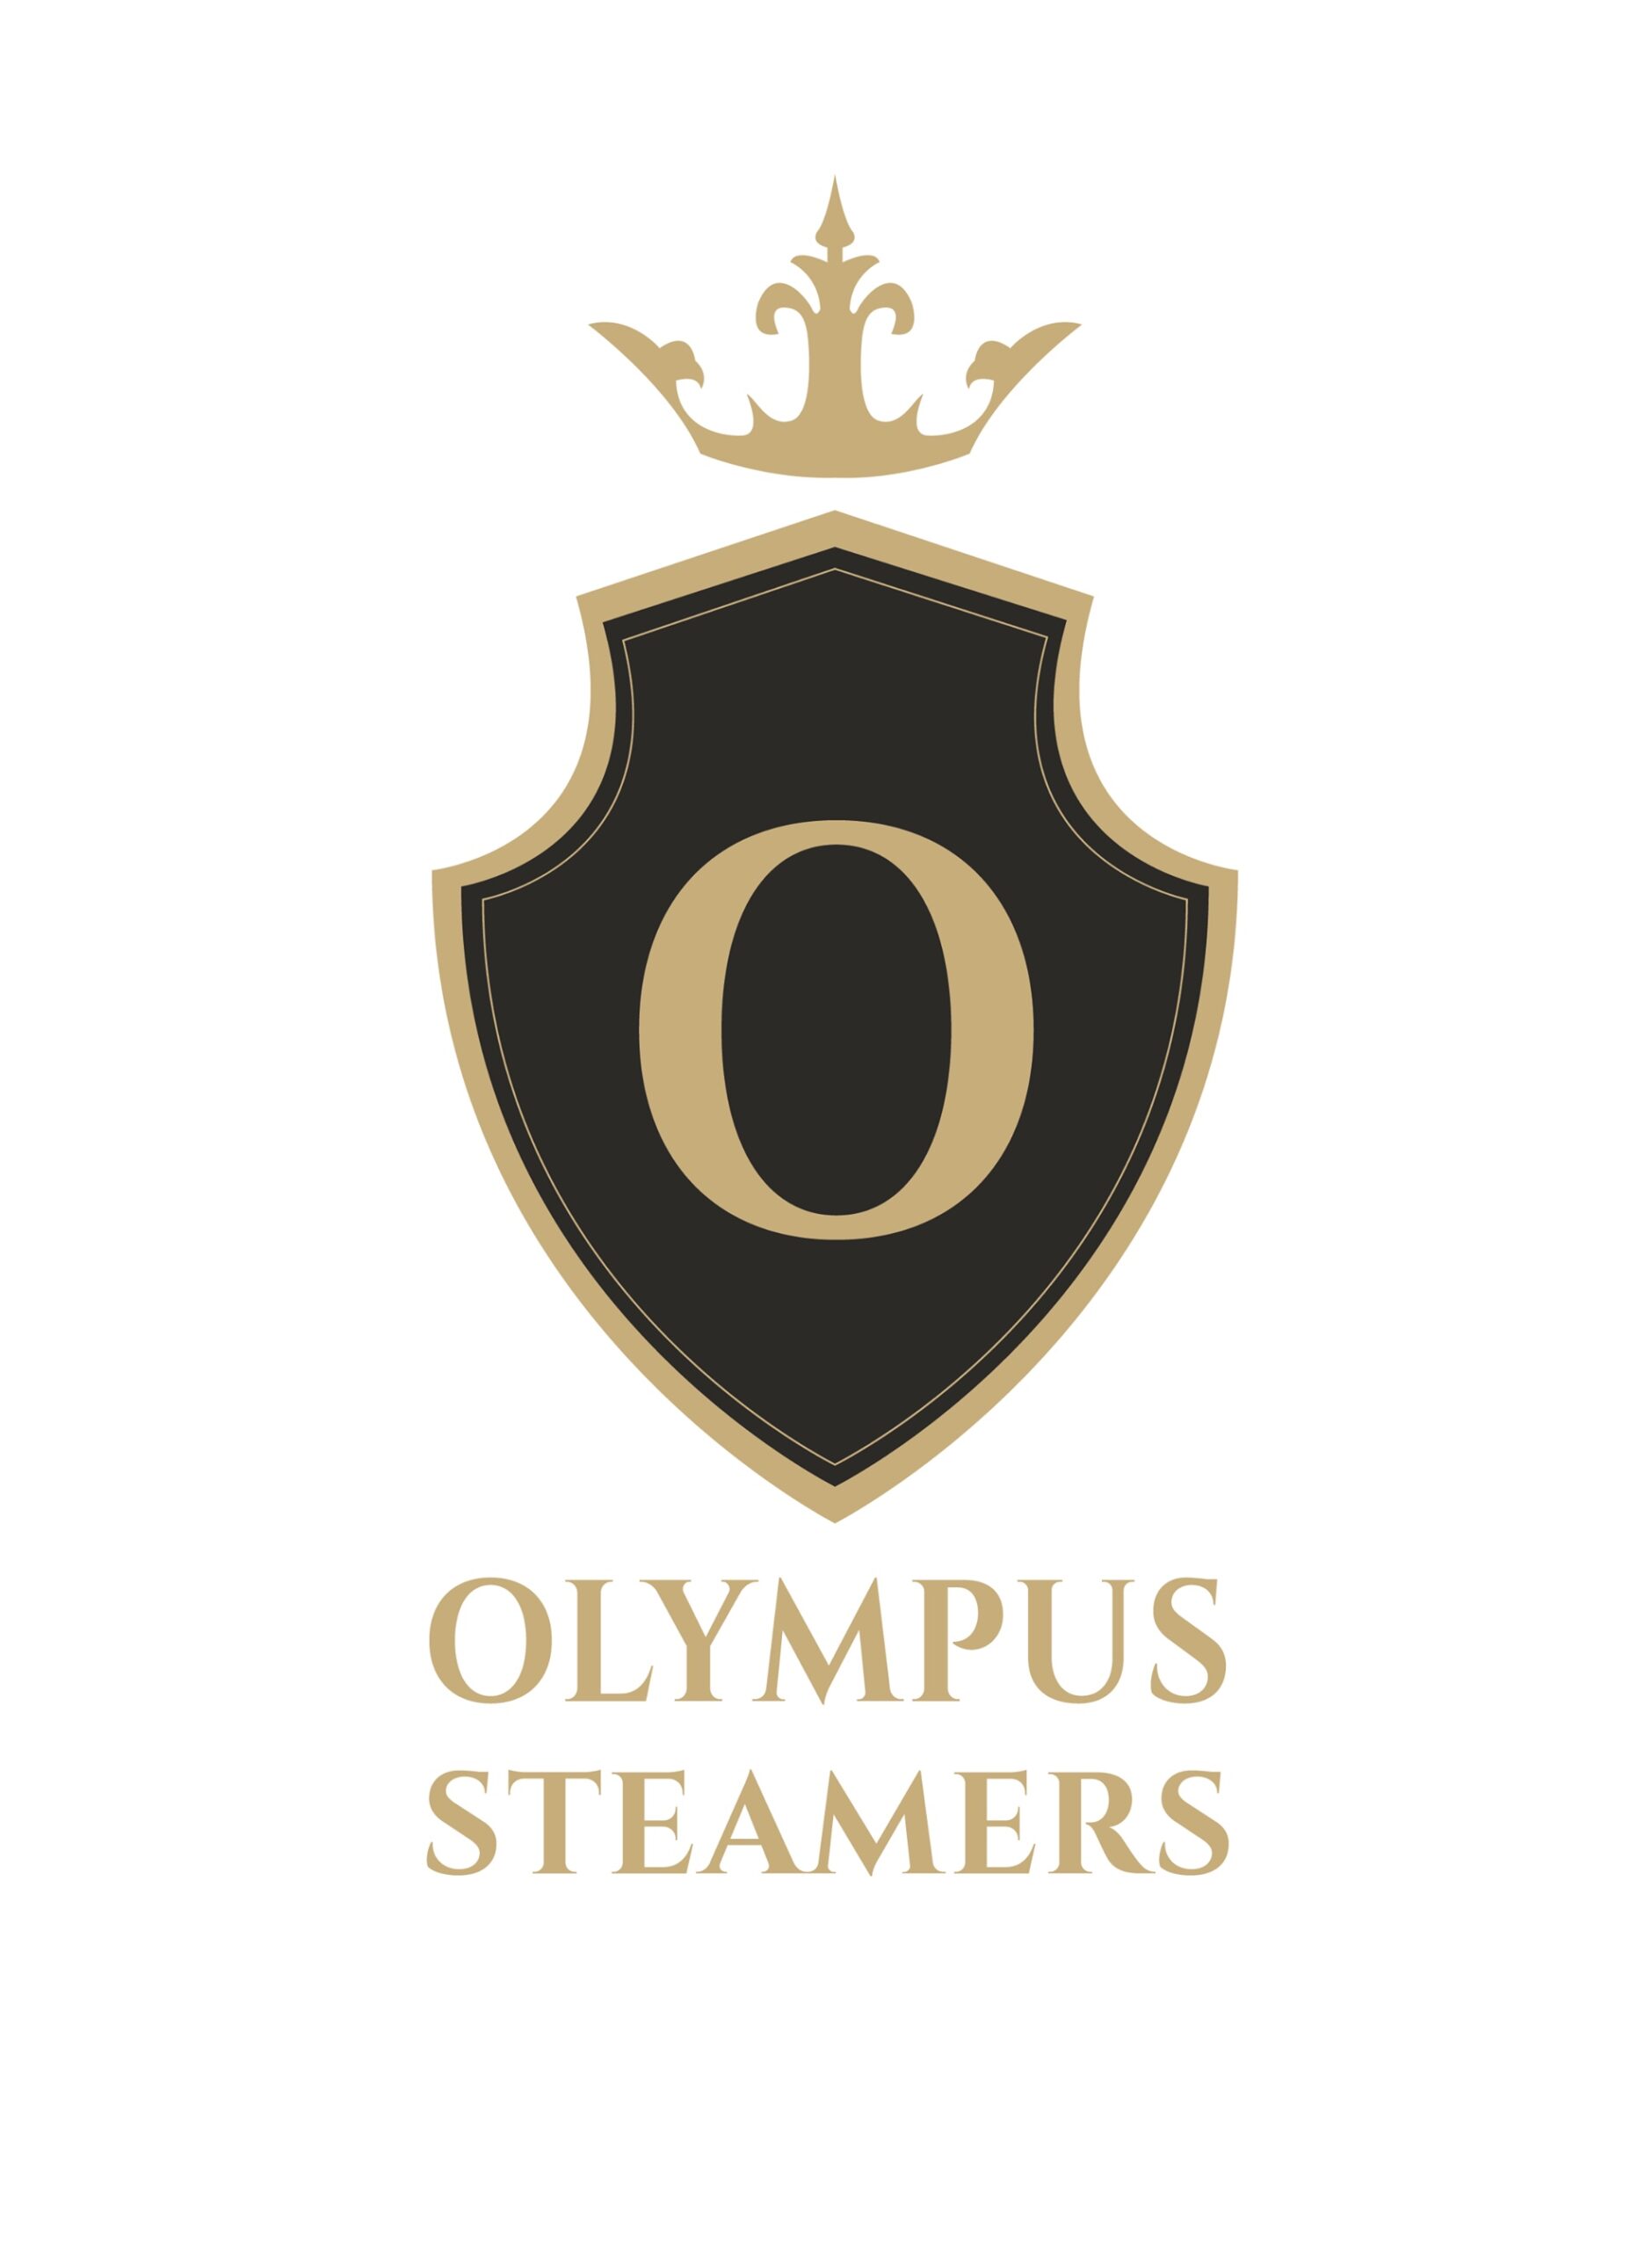 Olympus Steamers